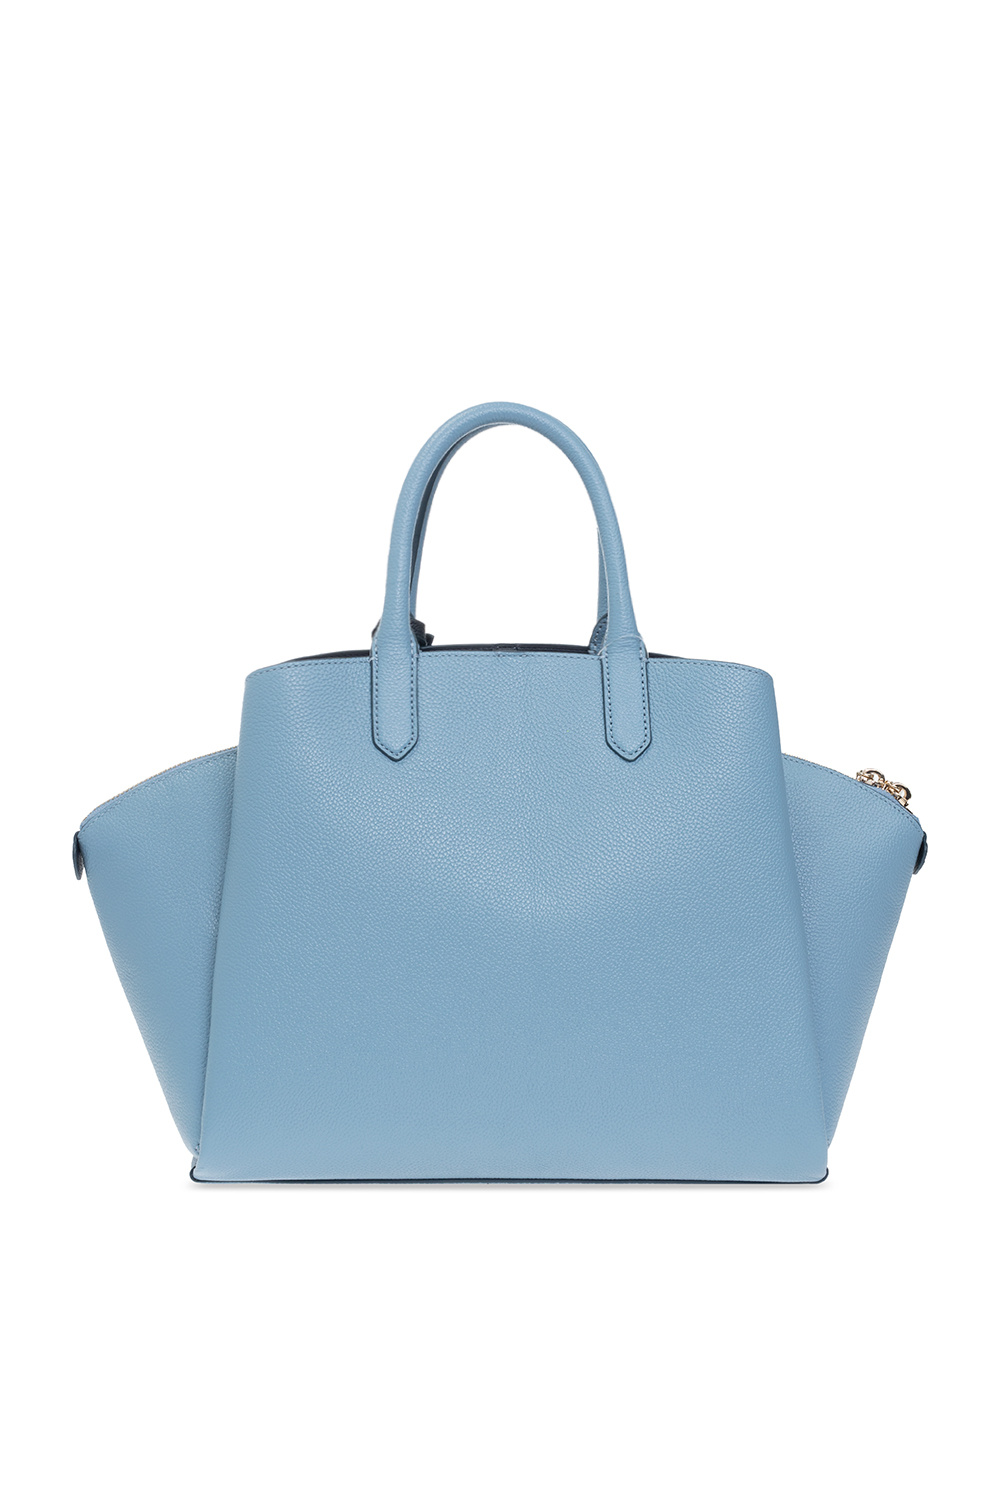 IetpShops Australia - 'Avenue Medium' handbag Kate Spade - pre-owned Kelly  Retourné 40 bag